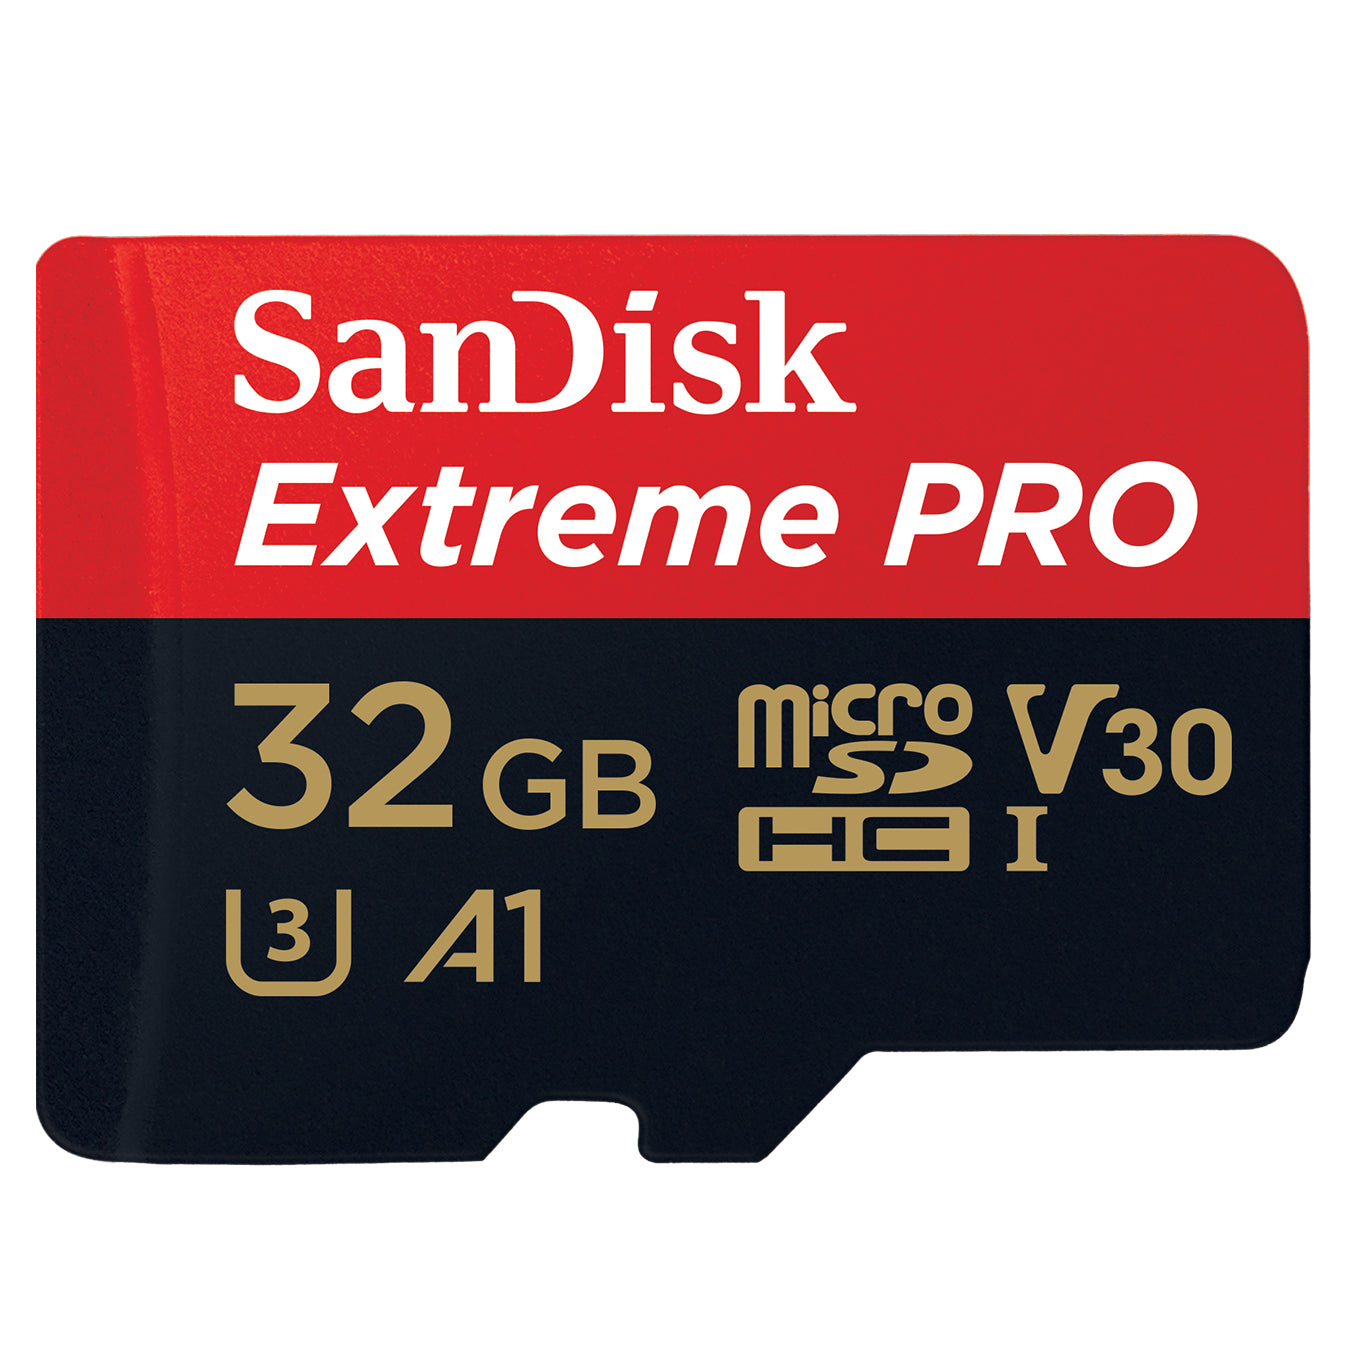 SanDisk Extreme PRO microSDXC A2 UHS-I Cards